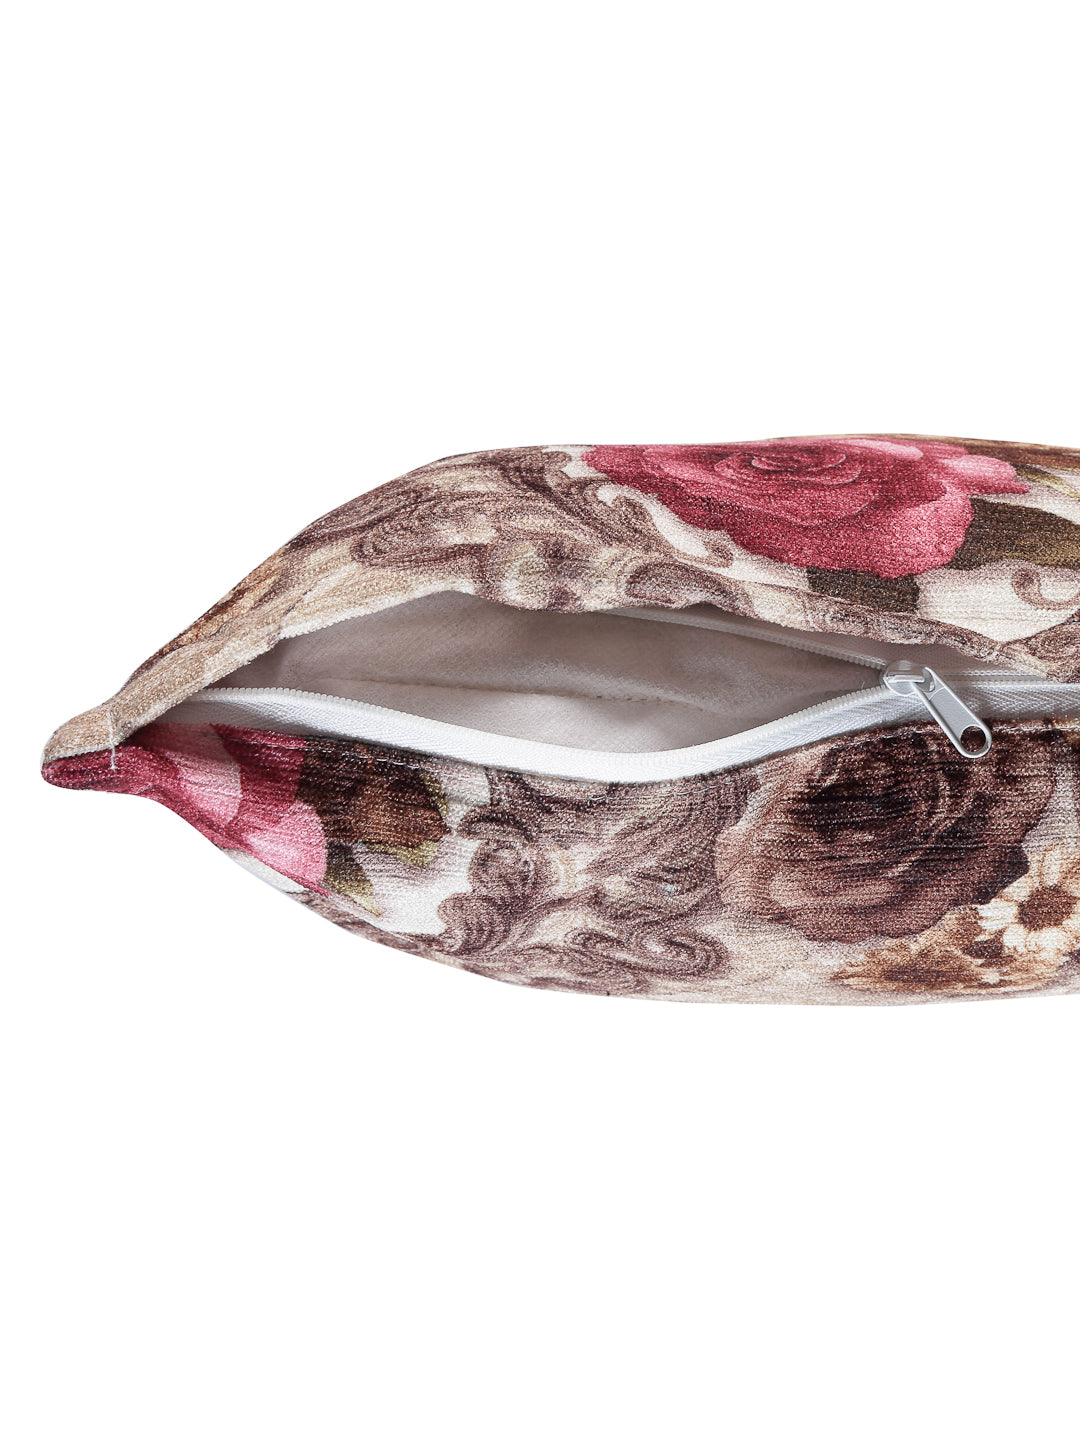 Arrabi Beige Floral TC Cotton Blend Cushion Covers (Pack of 5) (40 x 40 cm)